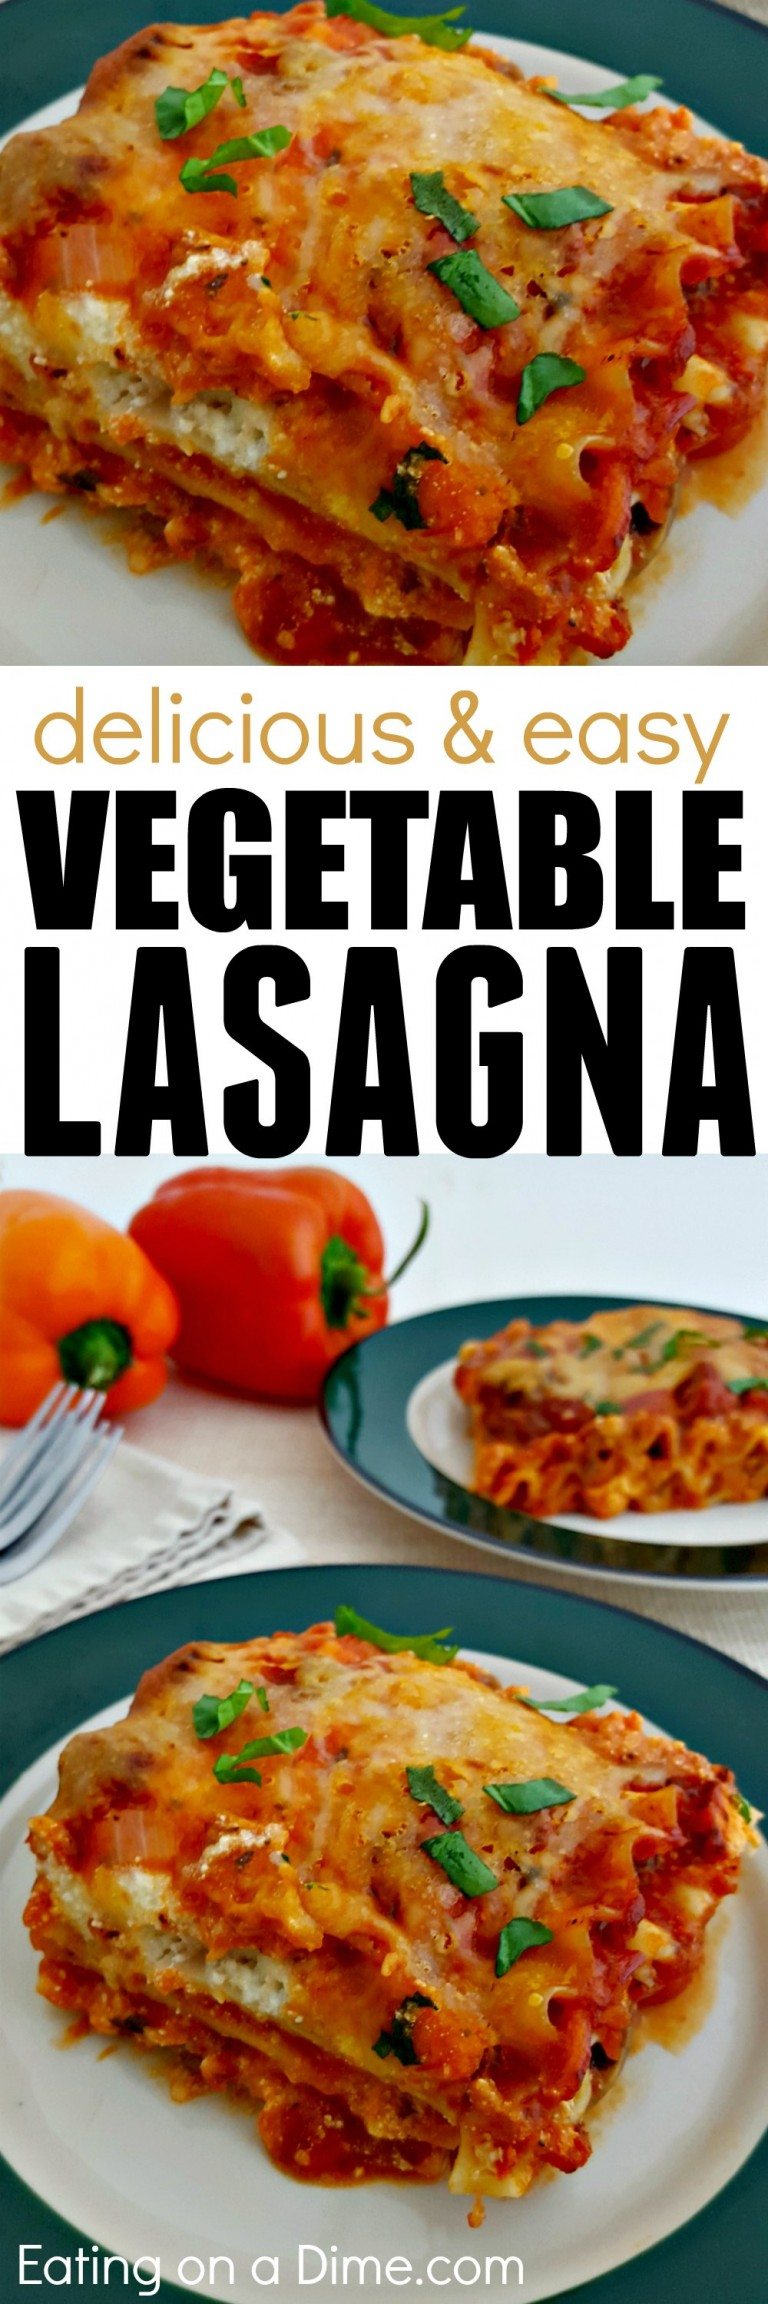 Easy Vegetarian Lasagna Recipe - Meatless Lasagna Everyone Will Love!